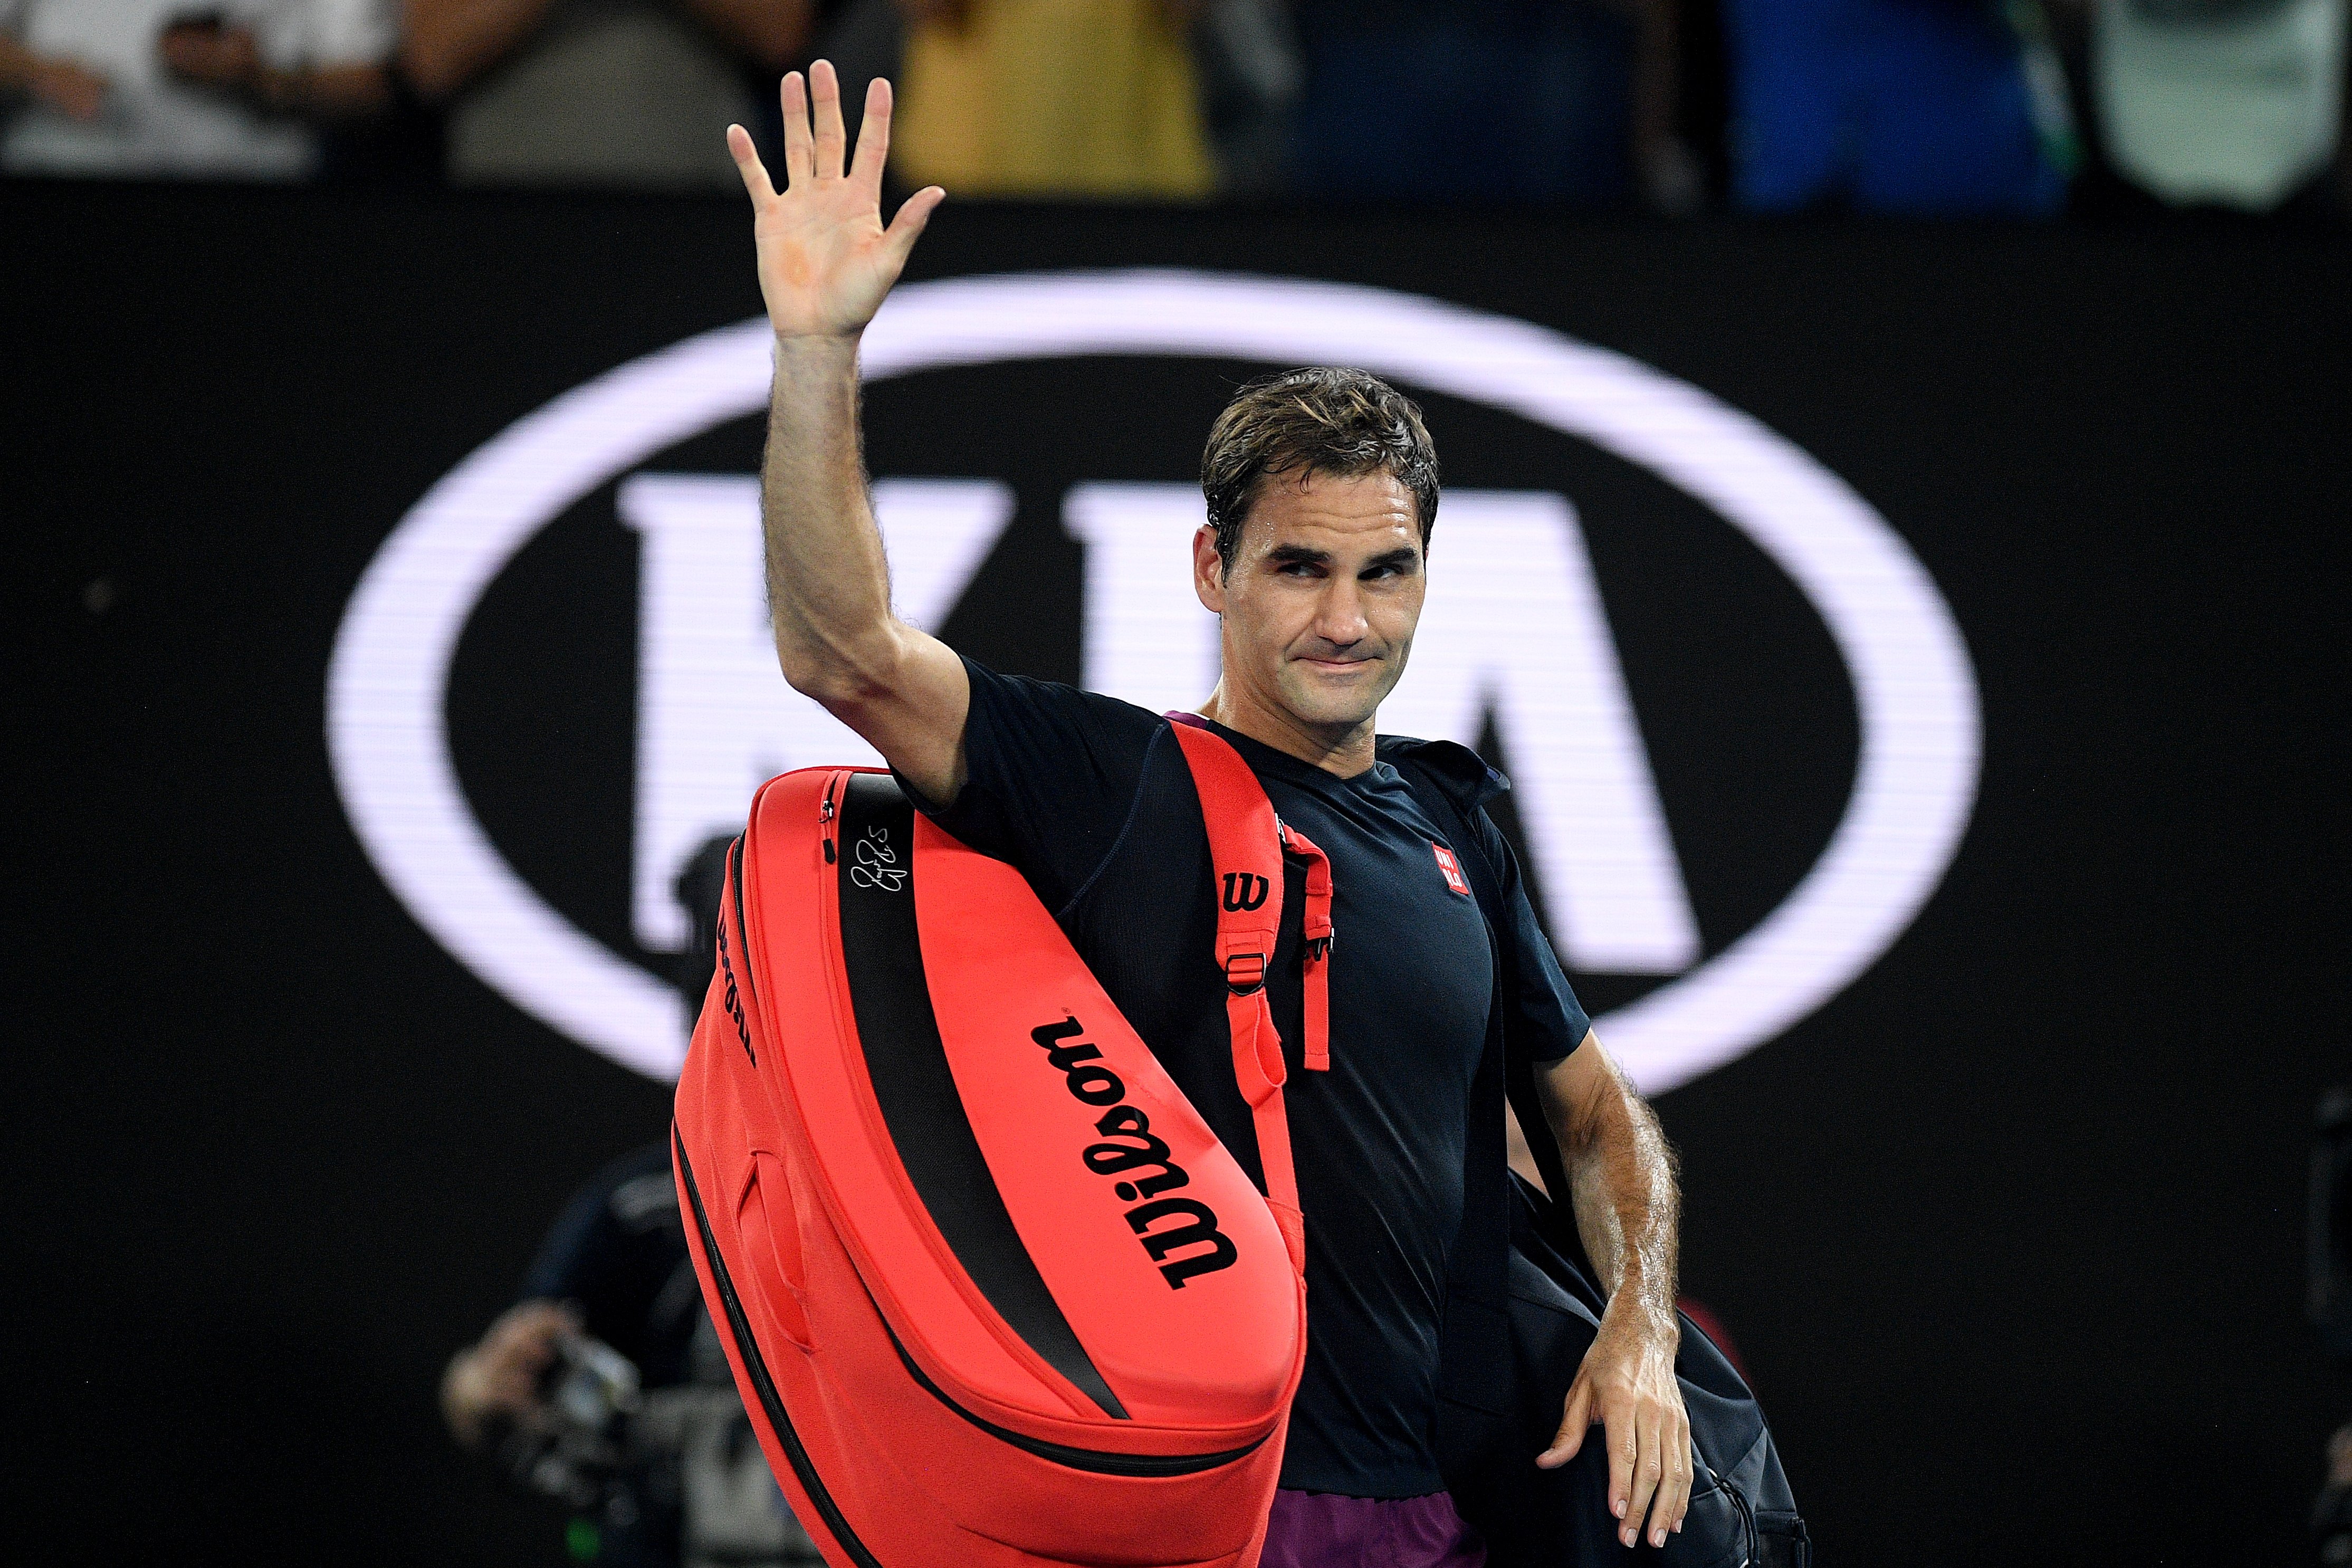 La gran propuesta de Federer en el tenis: unir mujeres y hombres